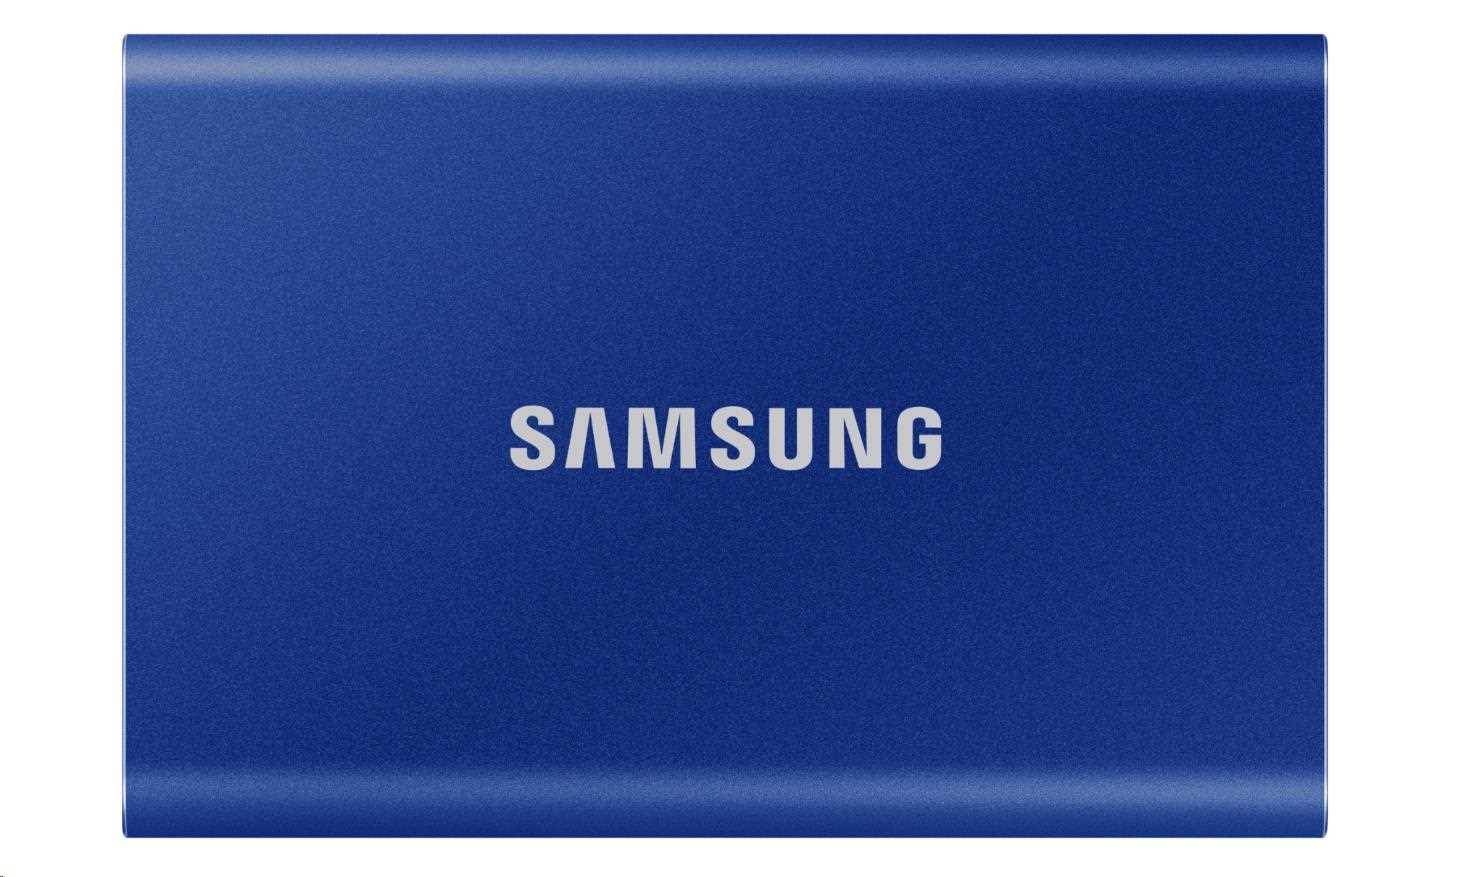 Externý disk SSD Samsung - 1 TB - modrý5 